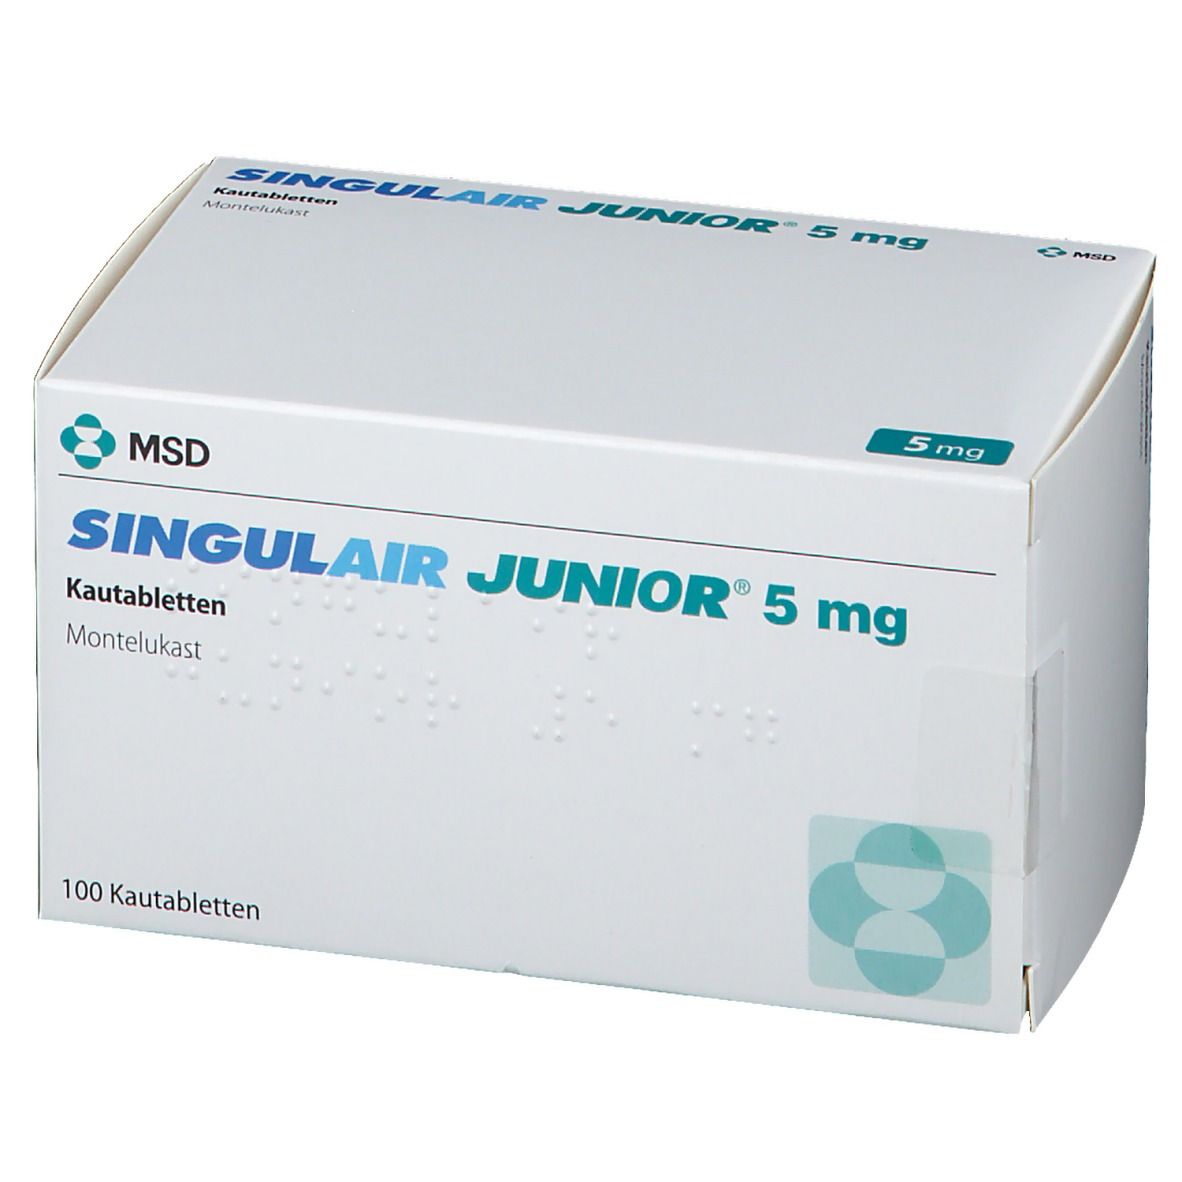 SINGULAIR JUNIOR® 5 mg